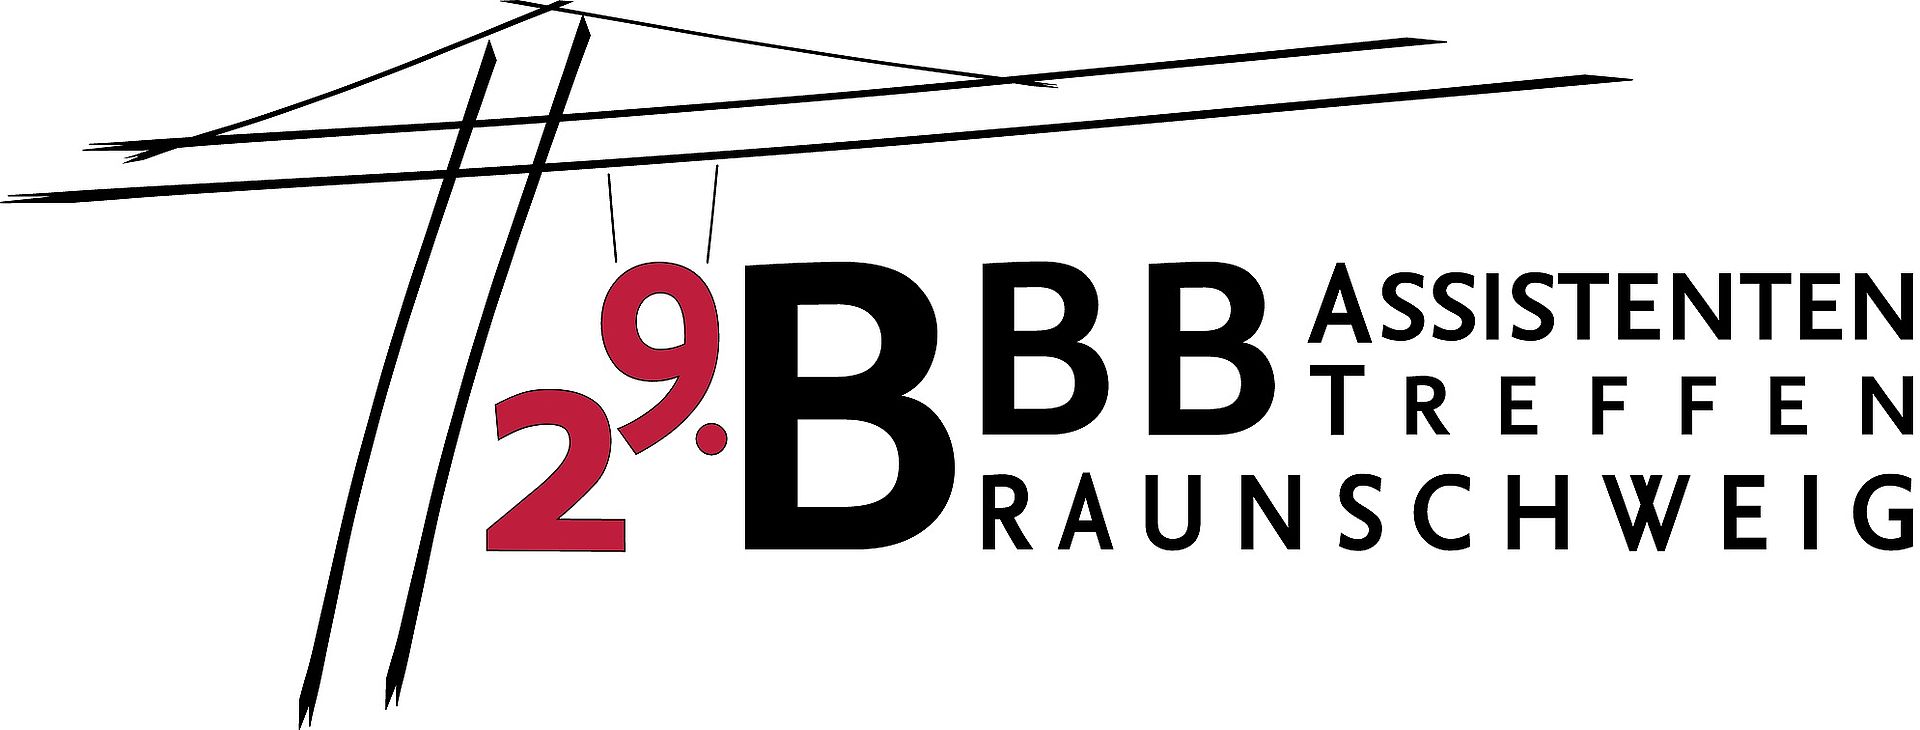 Logo BBB-Assistententreffen 2018